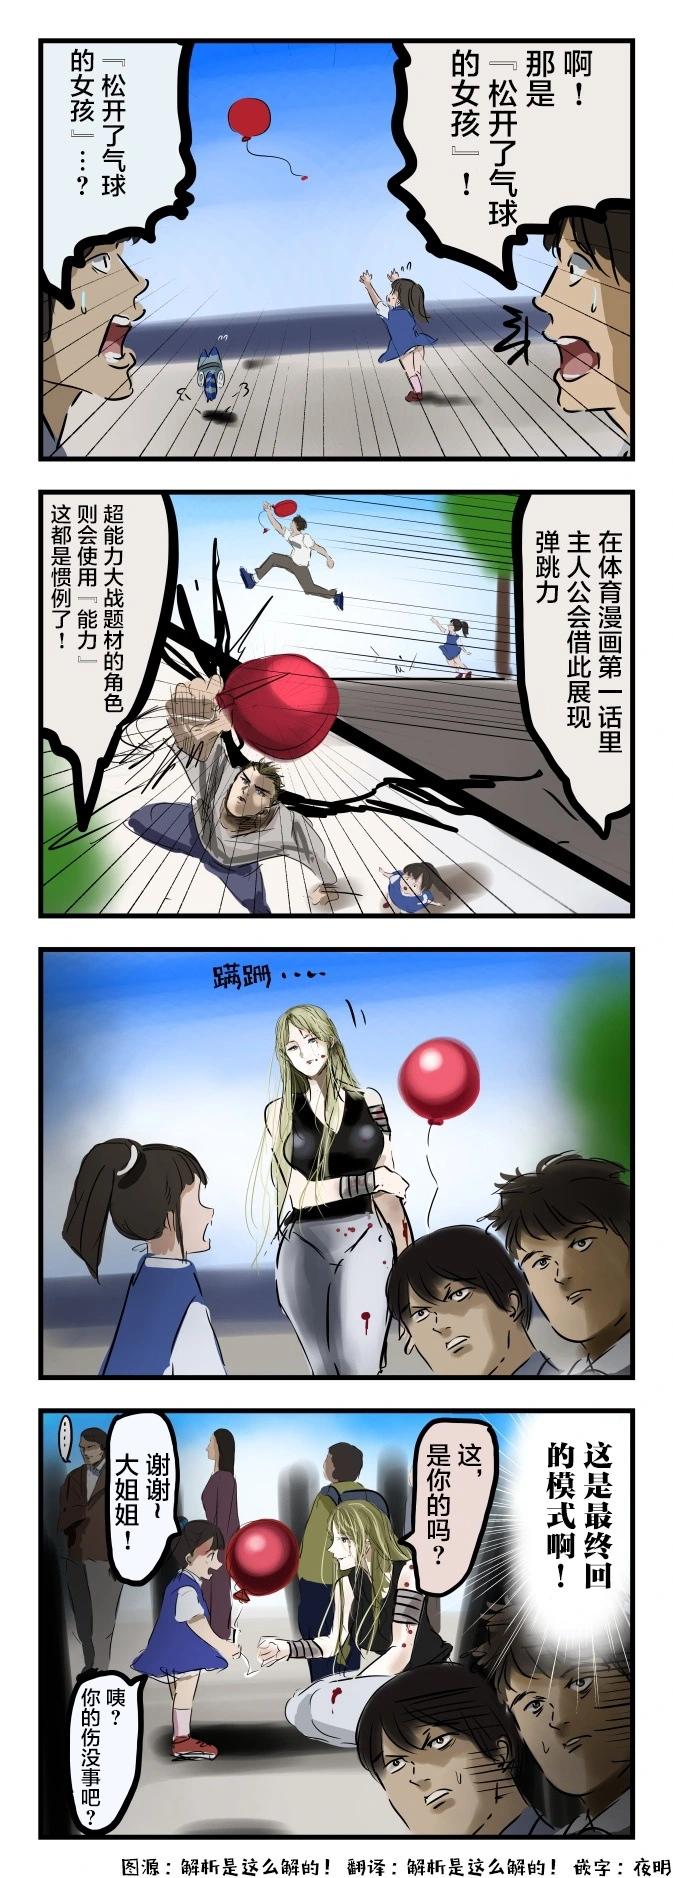 カコミスル老师四格合集 - 气球 - 1